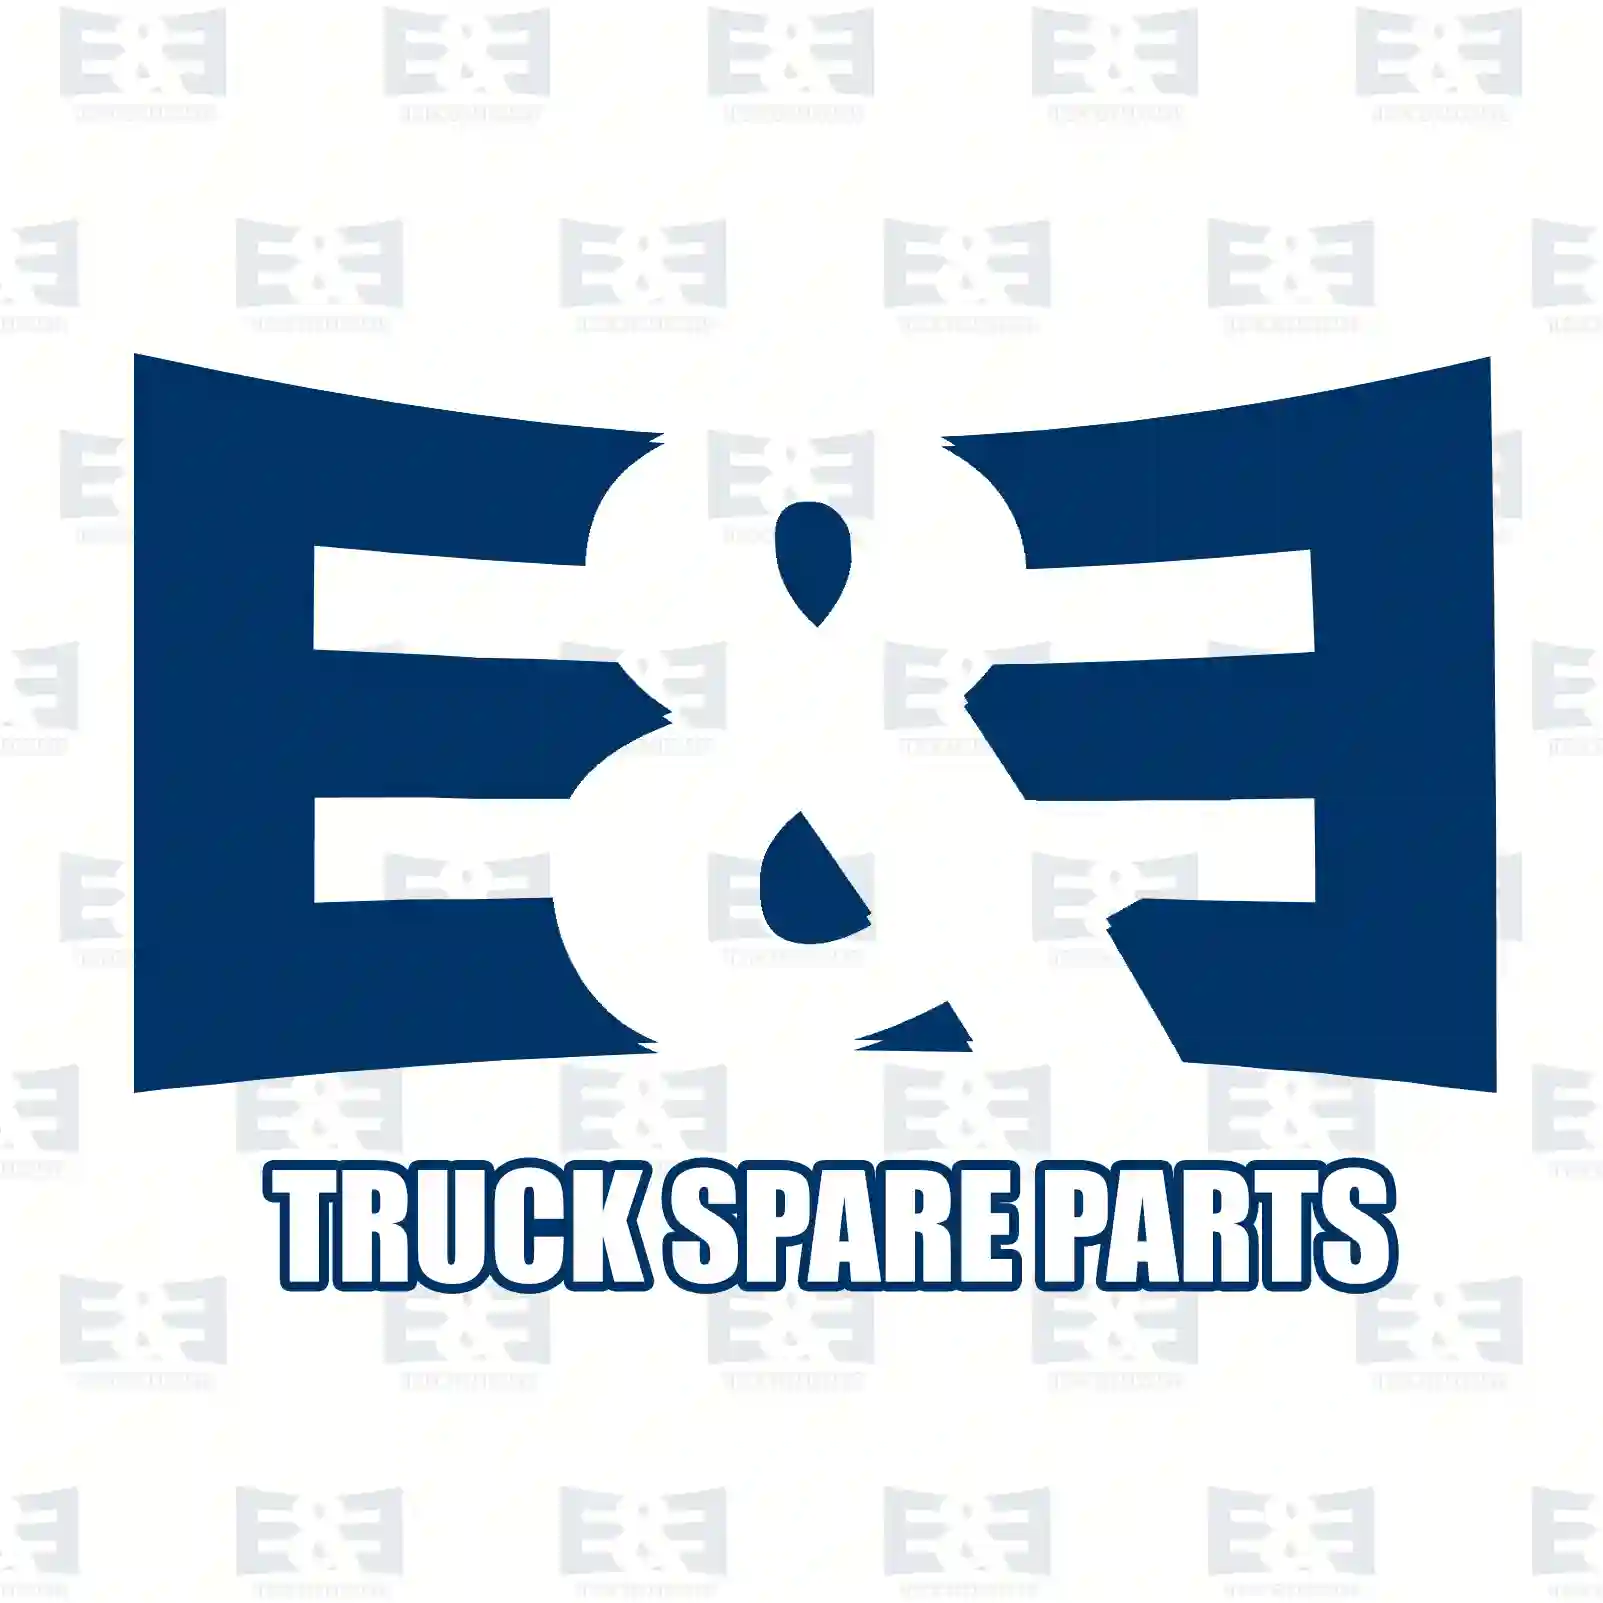 Handle, front grill, 2E2280302, 98444271, ZG60872-0008 ||  2E2280302 E&E Truck Spare Parts | Truck Spare Parts, Auotomotive Spare Parts Handle, front grill, 2E2280302, 98444271, ZG60872-0008 ||  2E2280302 E&E Truck Spare Parts | Truck Spare Parts, Auotomotive Spare Parts